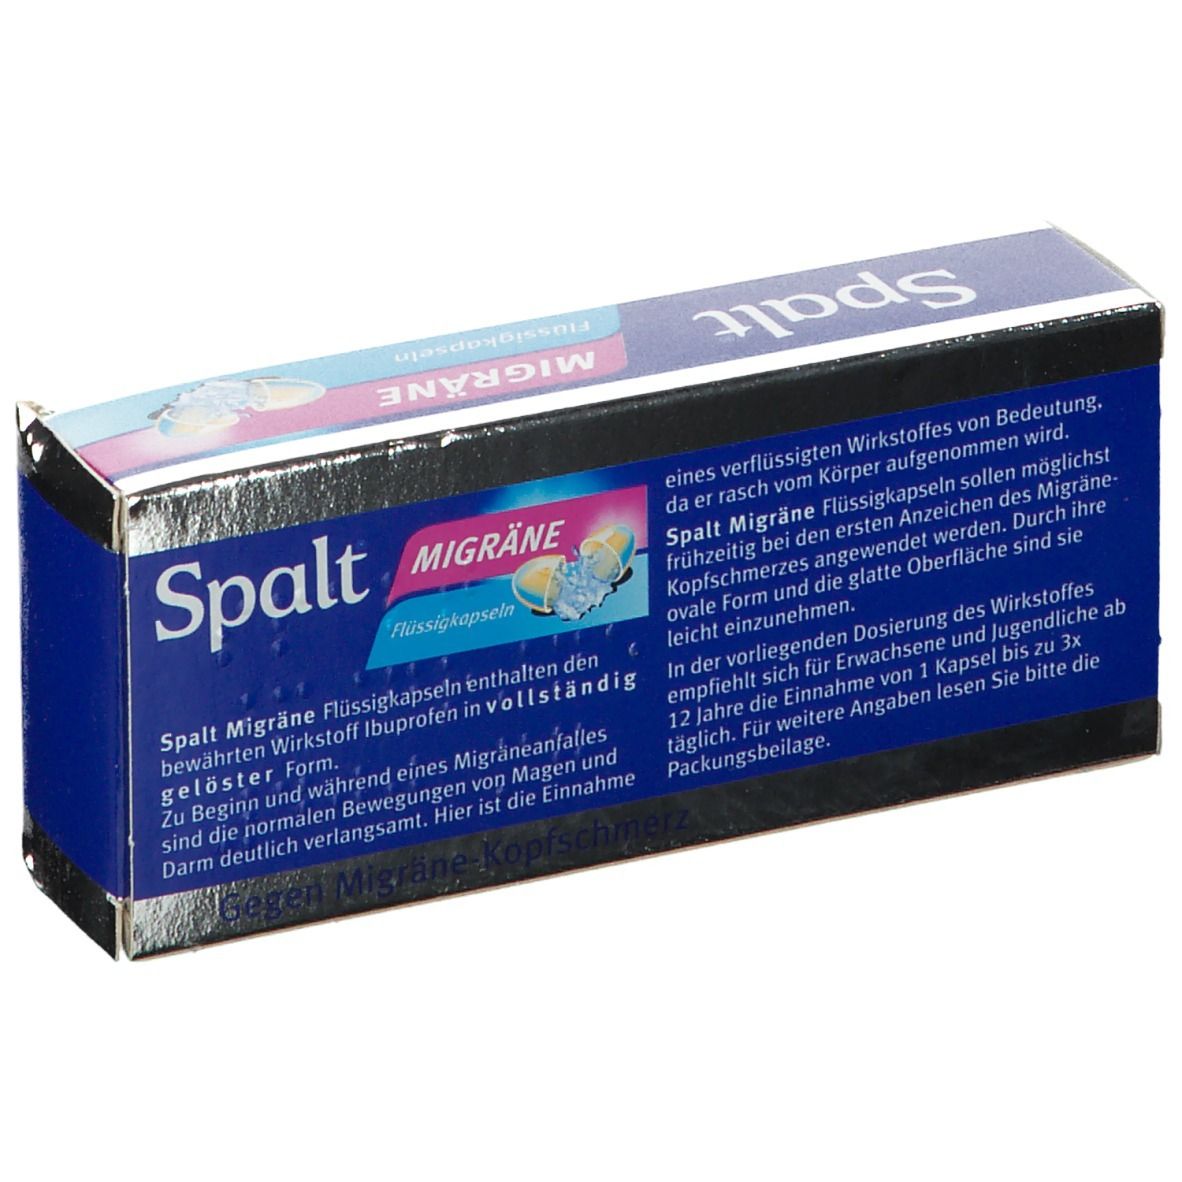 Spalt® Migräne Flüssigkapseln